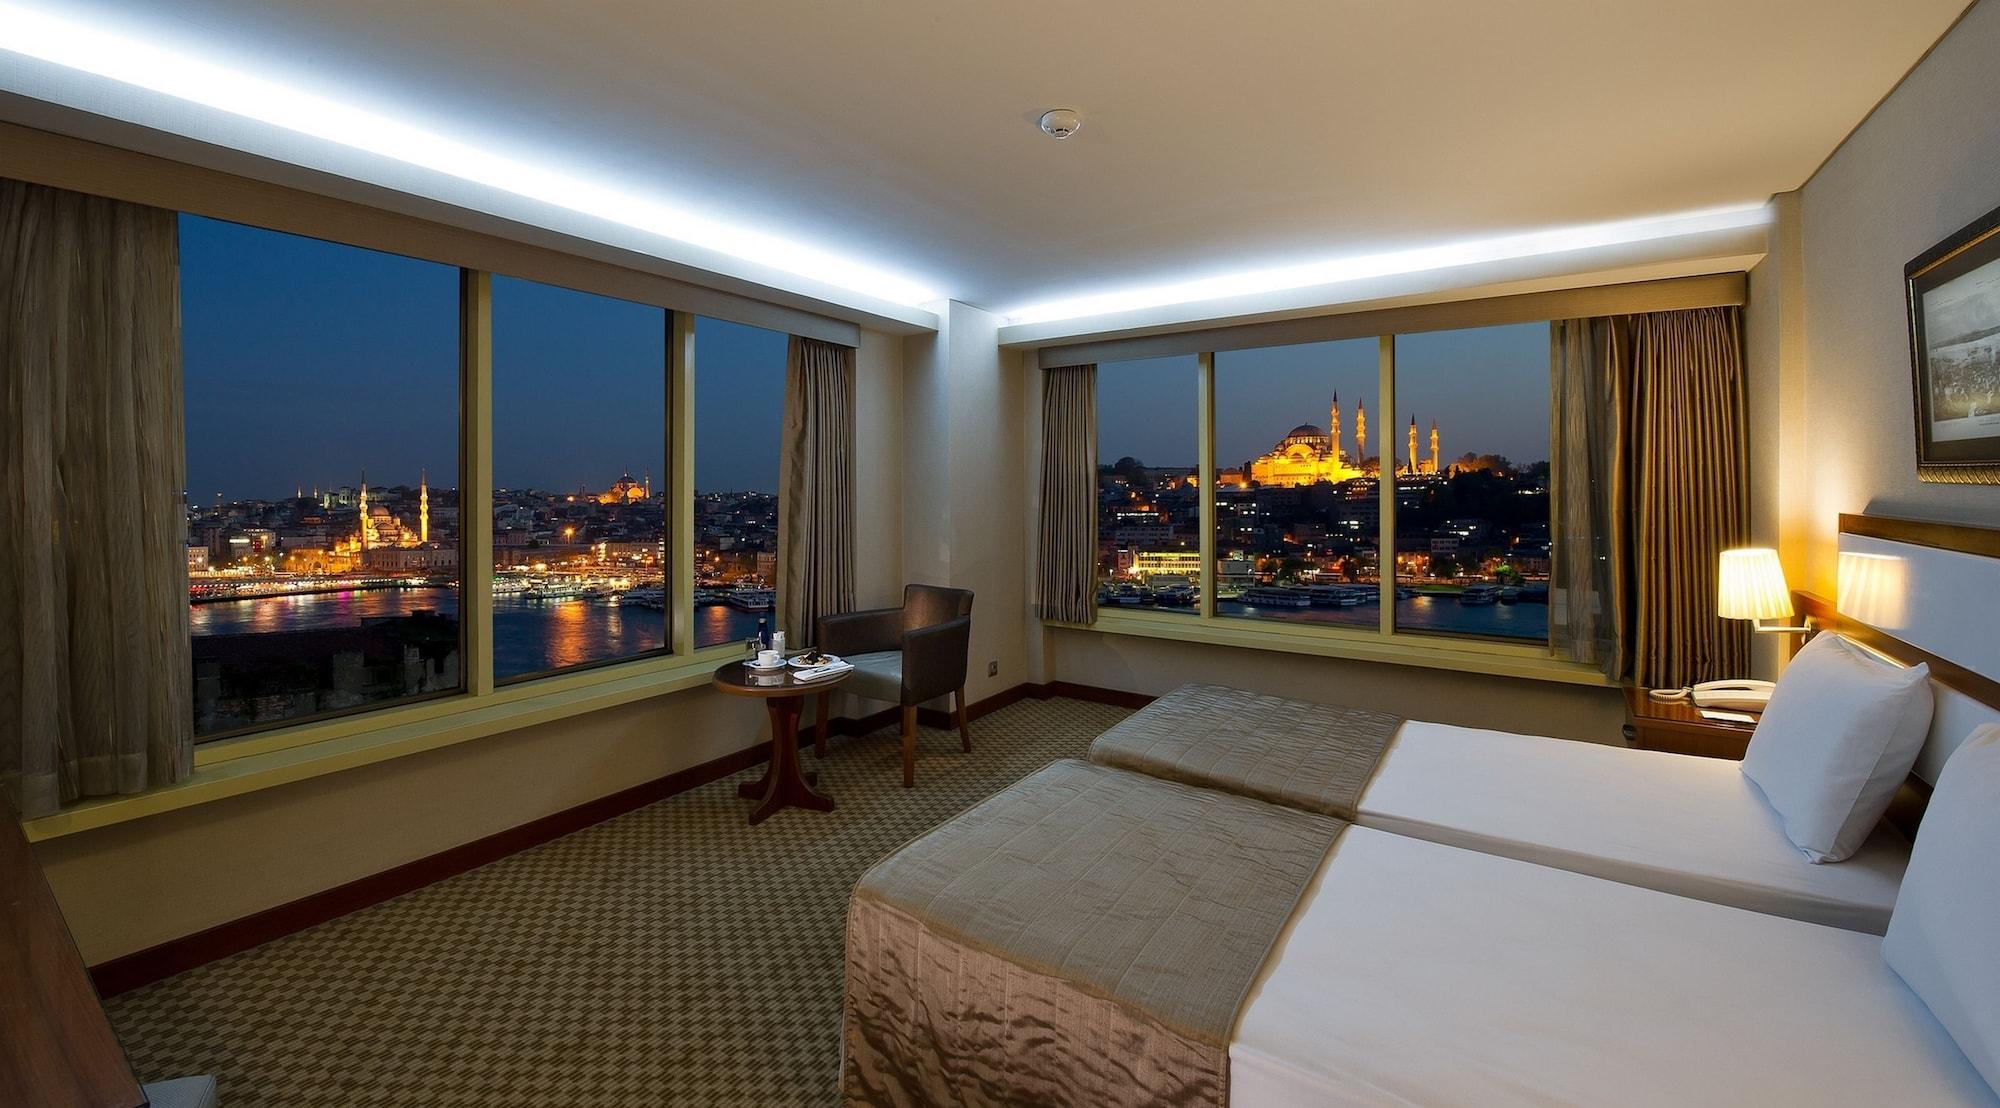 Сити отель стамбул. Отель Istanbul Golden City Hotel. Istanbul Golden City Hotel 4 Стамбул. Отель в Турции голденсити Хотель. Golden City Турция отель море.